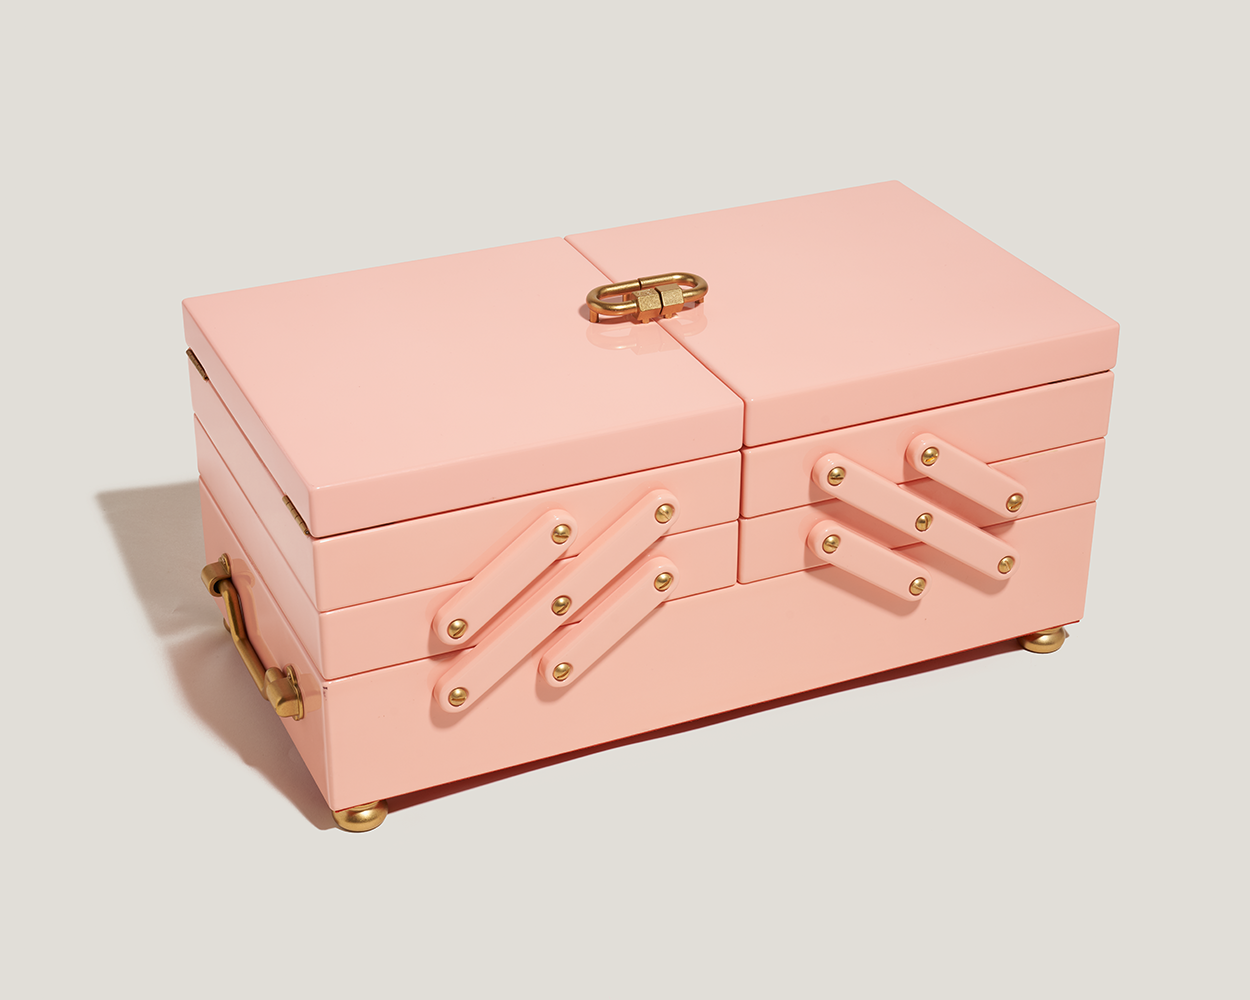 Closed multi-layered pink jewelry box